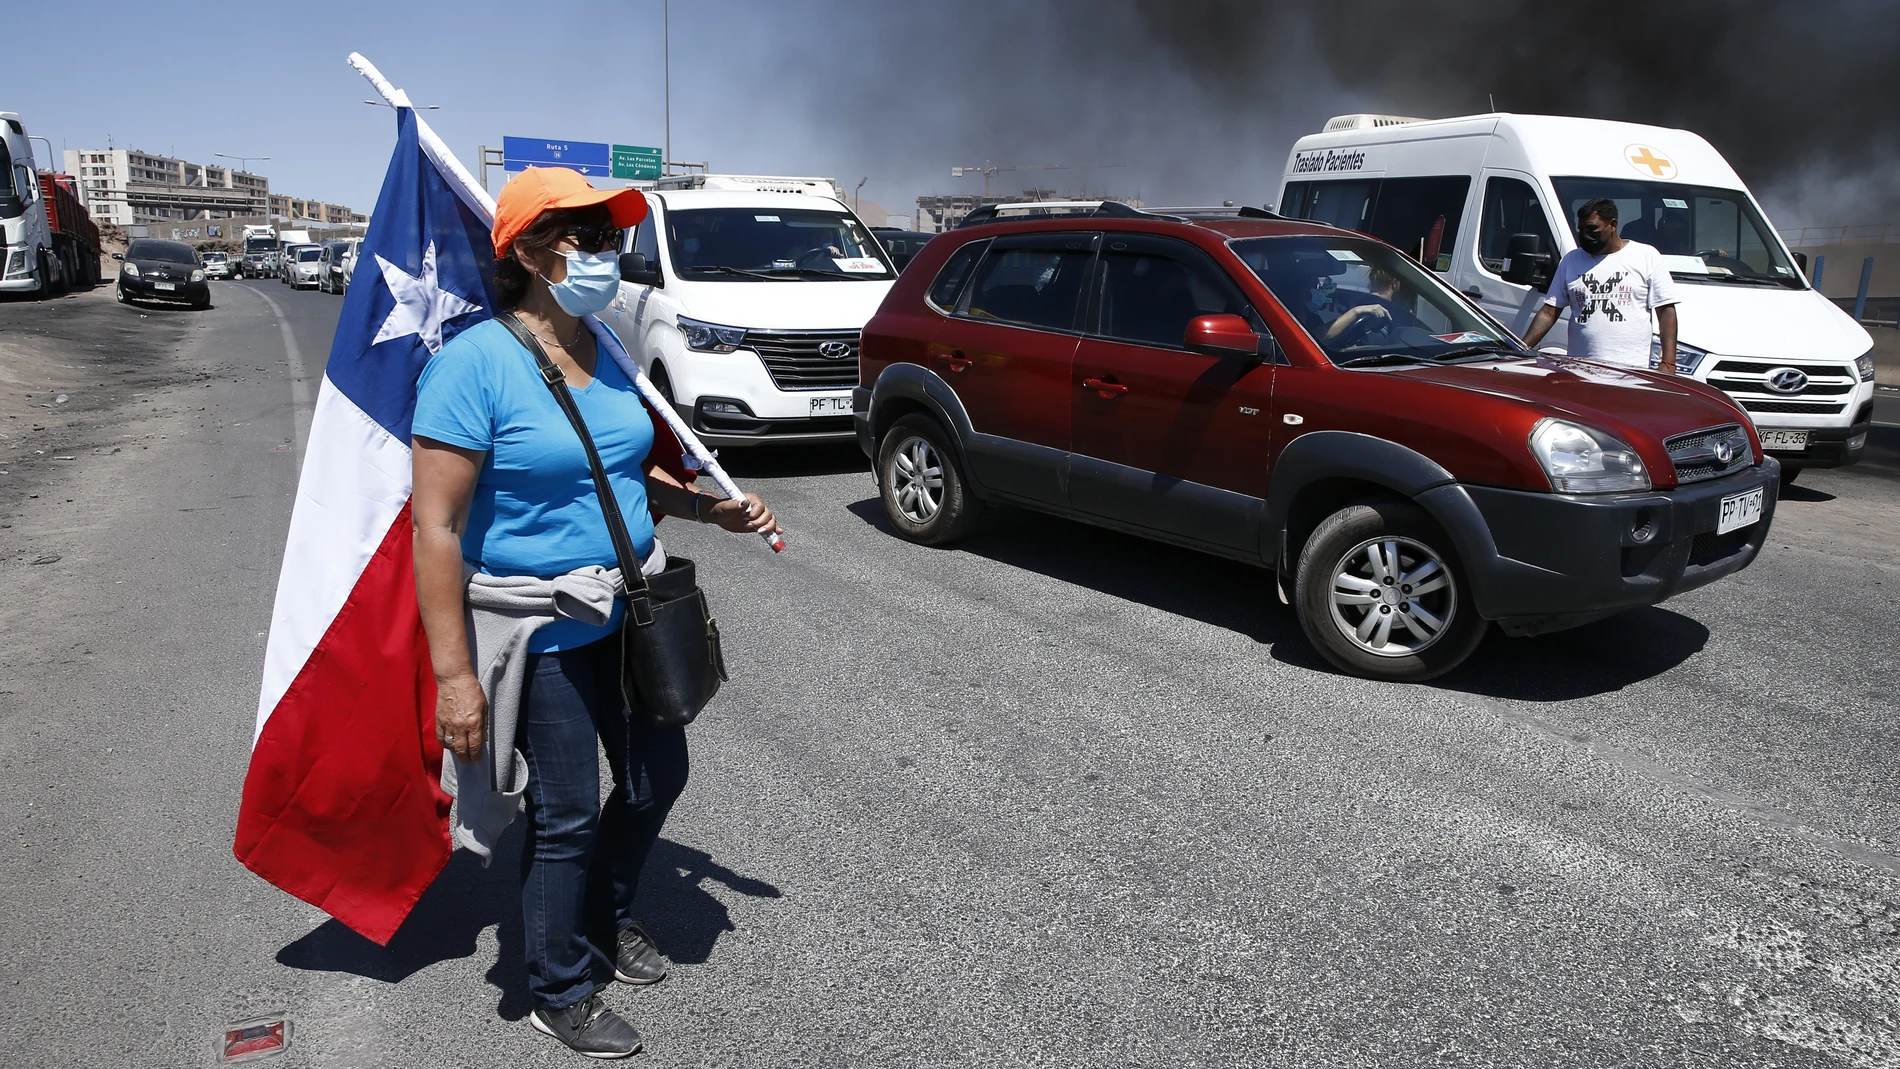 Vehículos detenidos por una barricada puesta por manifestantes durante protestas este sábado en Iquique, Chile